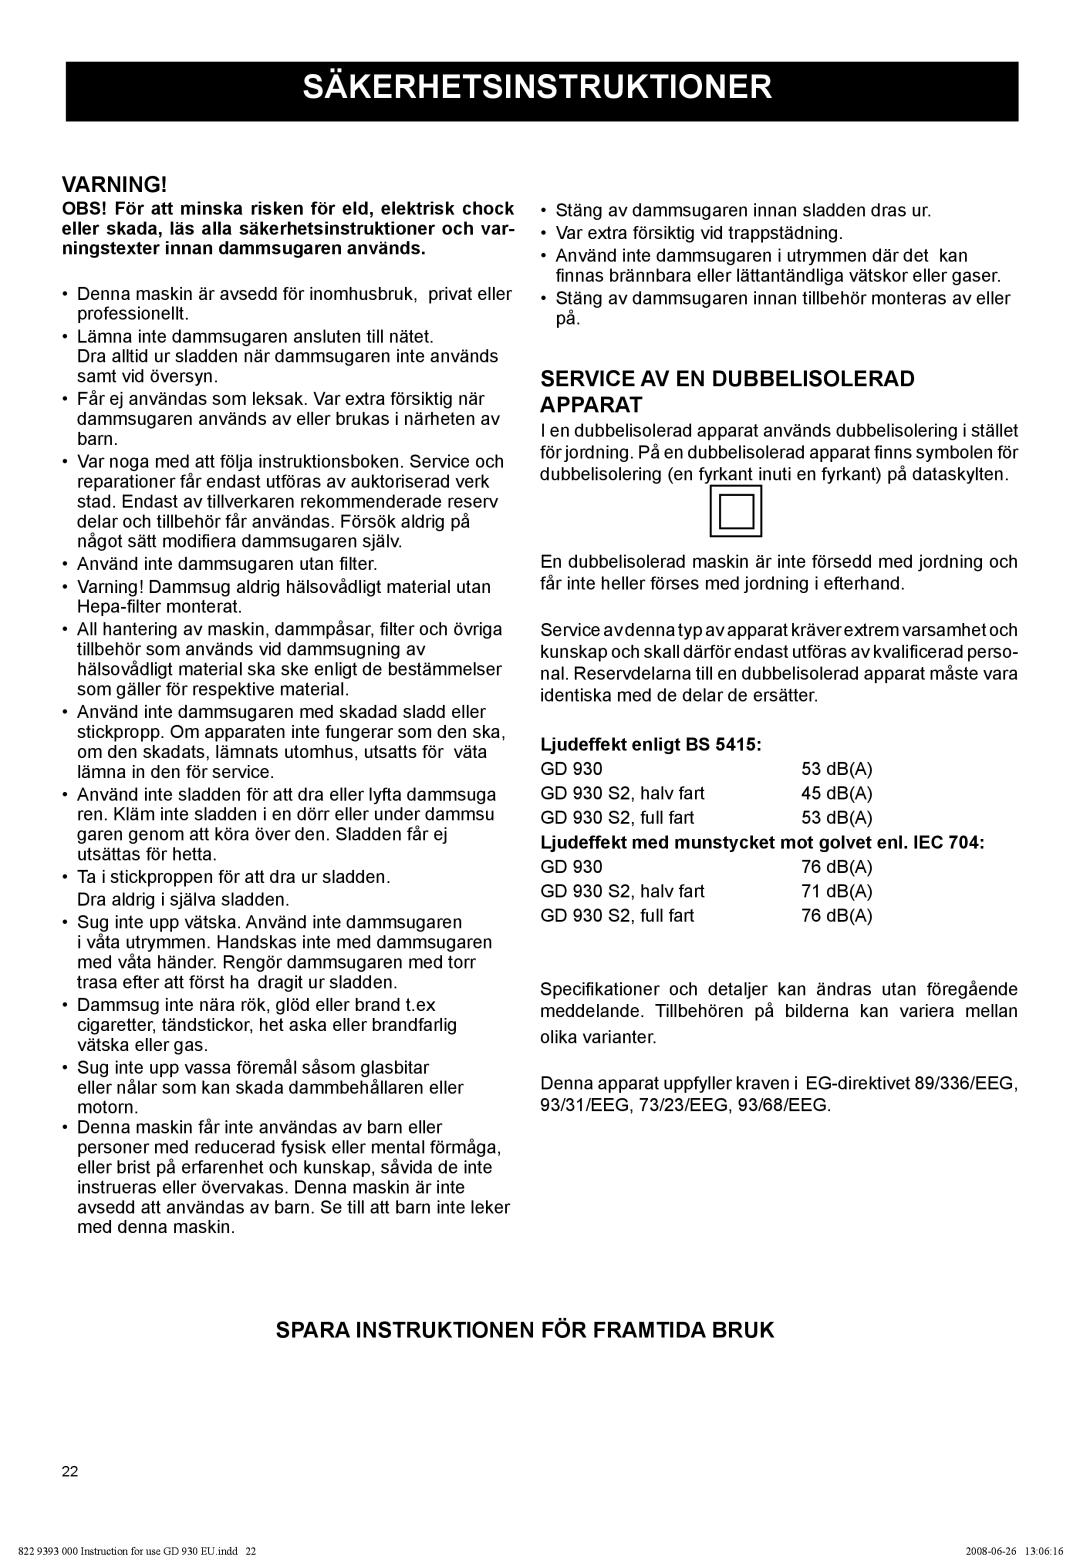 Nilfisk-Advance America GD 930S2 manual Säkerhetsinstruktioner, Varning, Service Av En Dubbelisolerad Apparat 